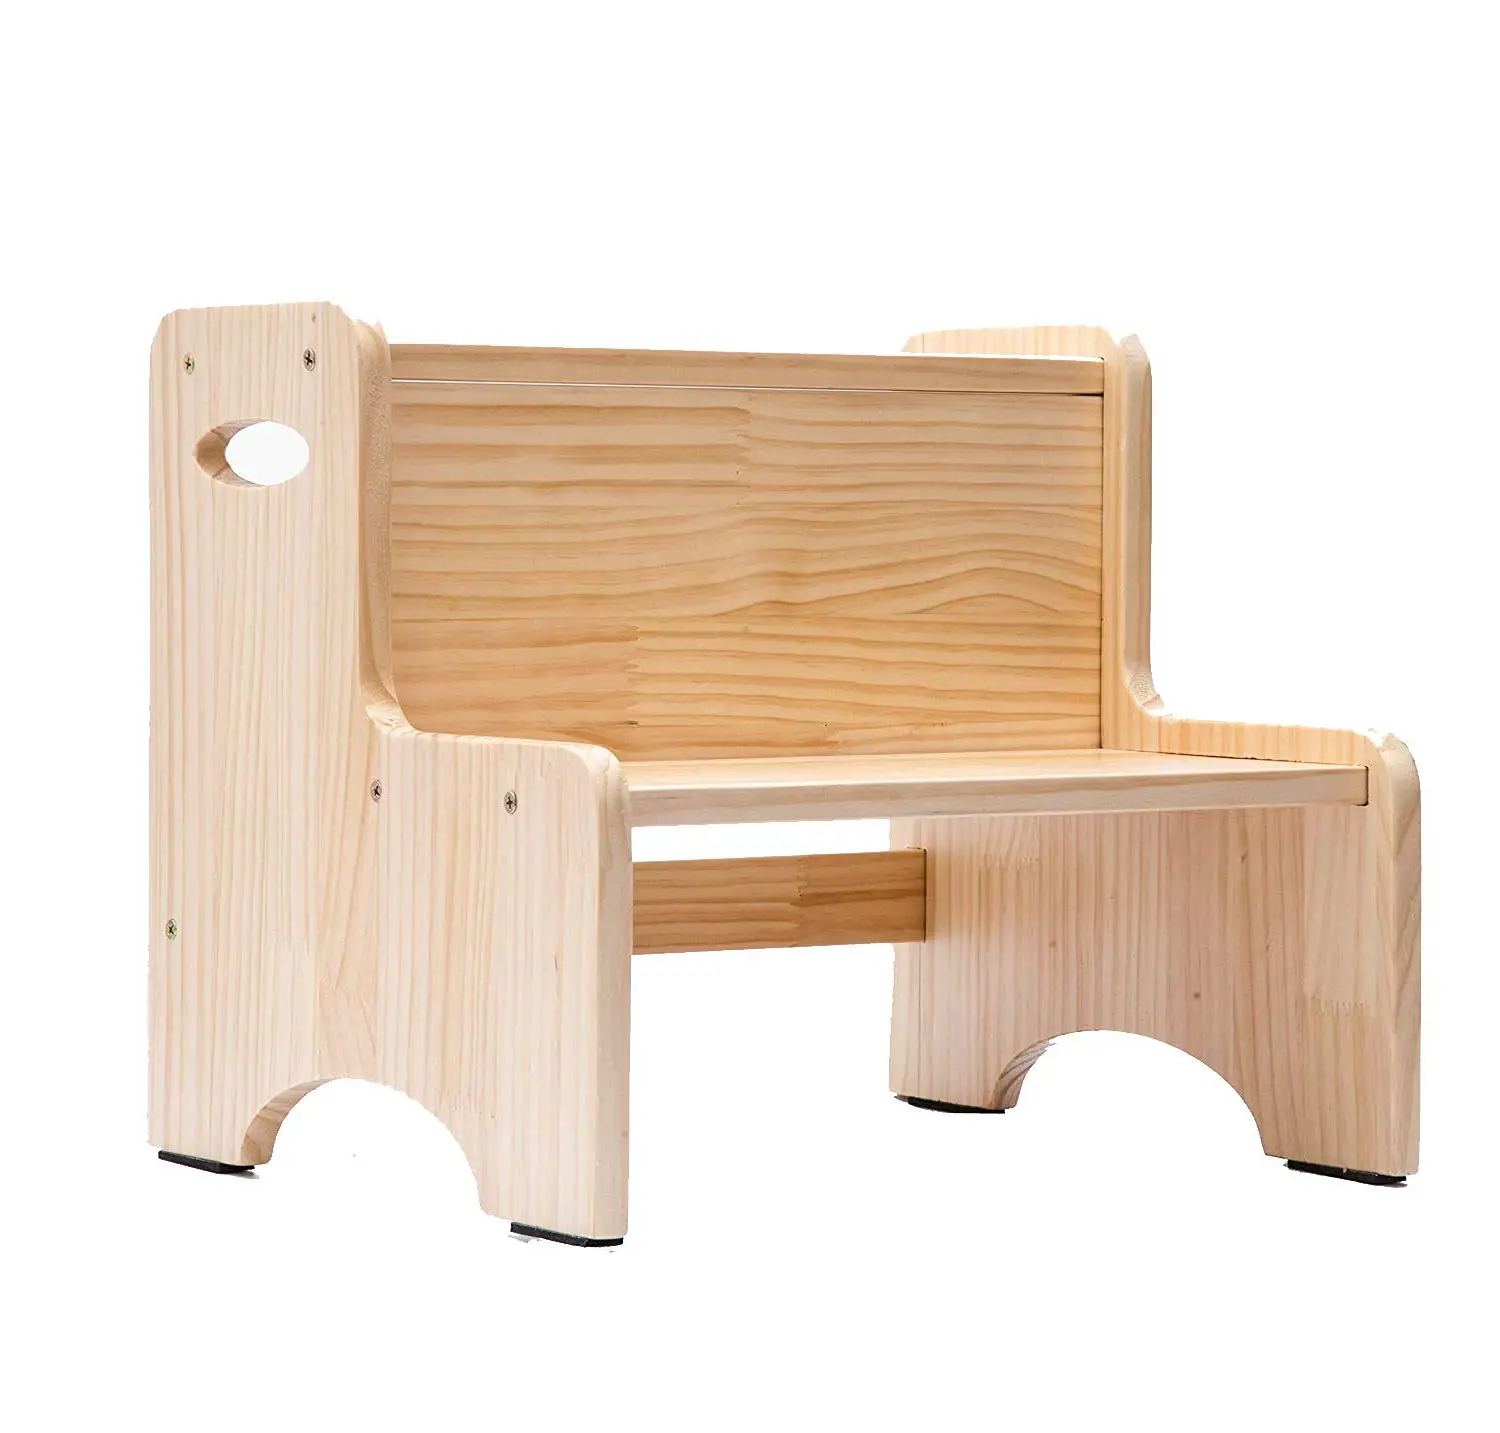 كرسي خشبي للأطفال من الخشب الطبيعي, كرسي خشبي للأطفال من الخشب الطبيعي مزود بمقابض لغرفة النوم والمطابخ